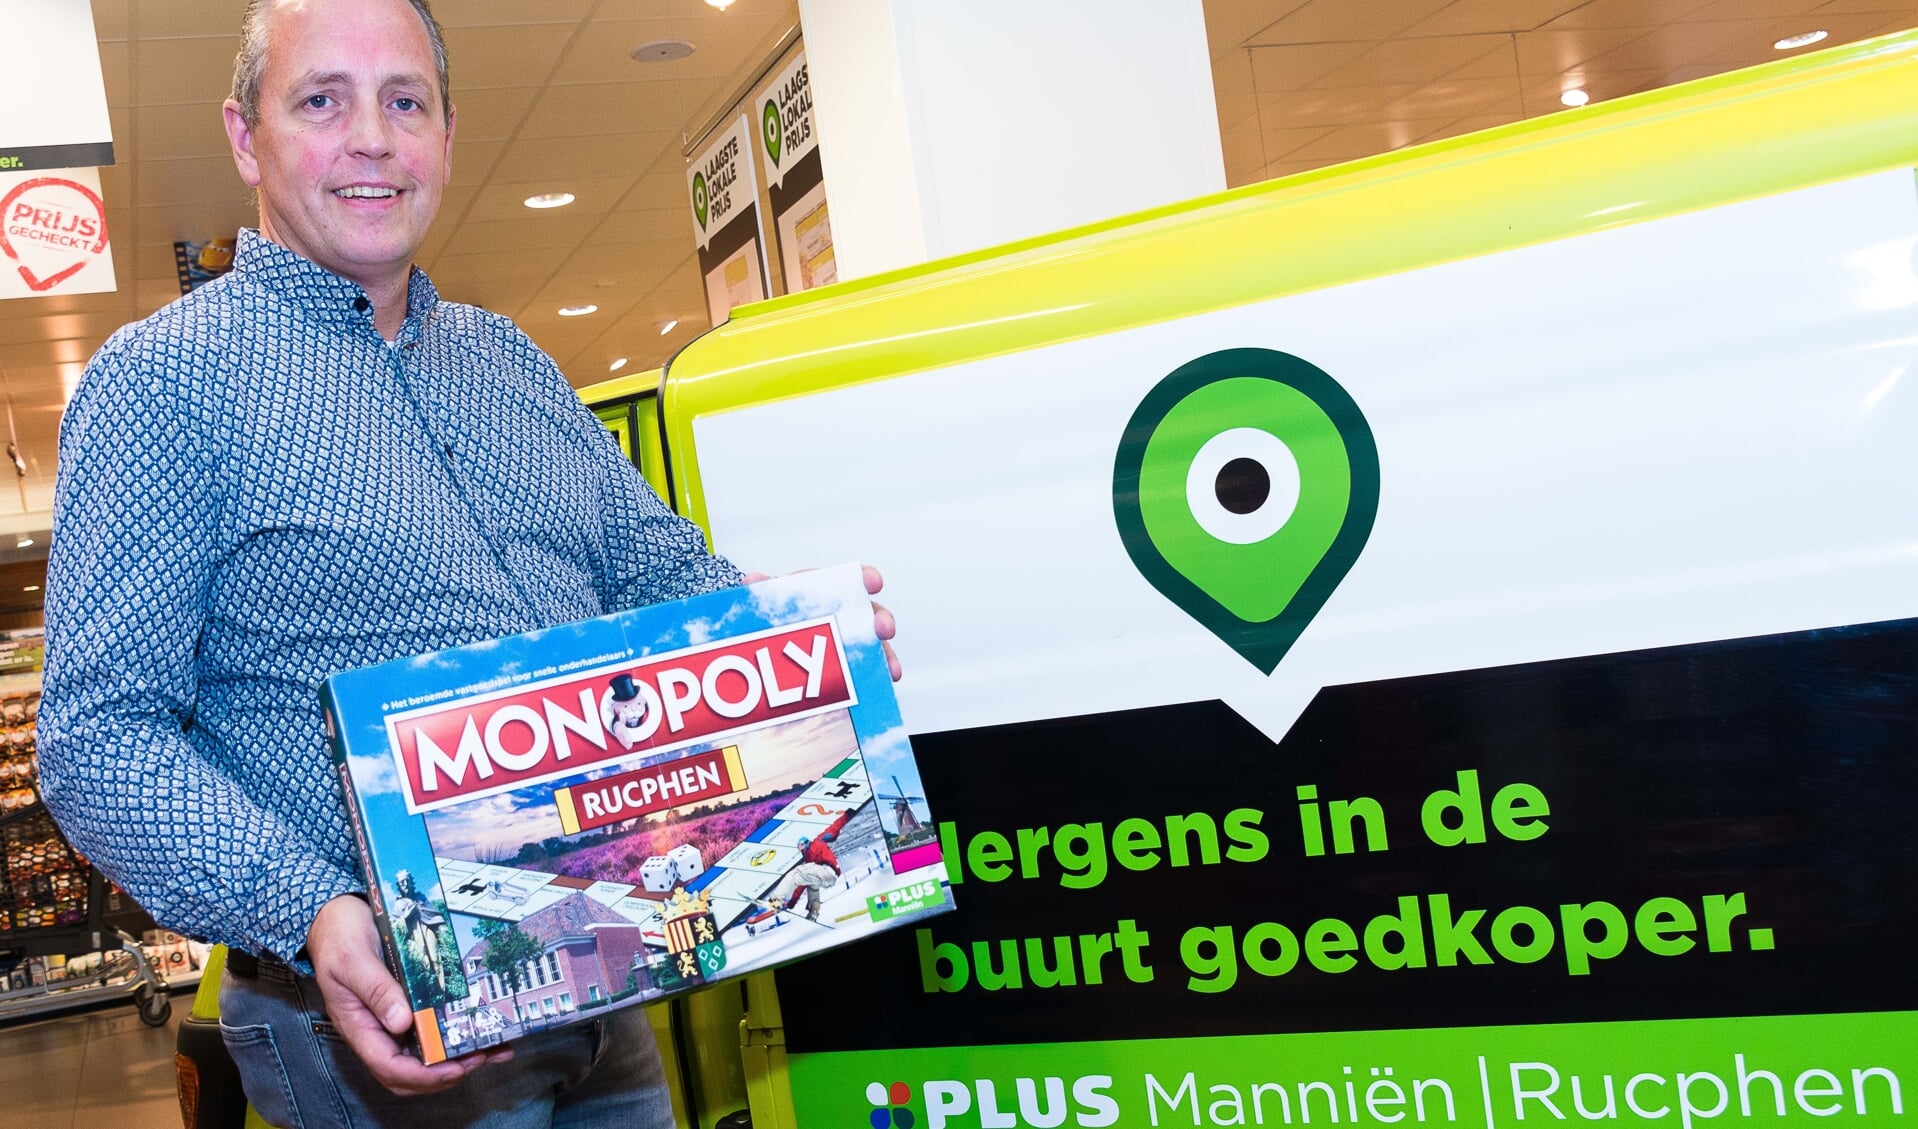 Peter Manniën met een exemplaar van het Monopolyspel Rucphen. 